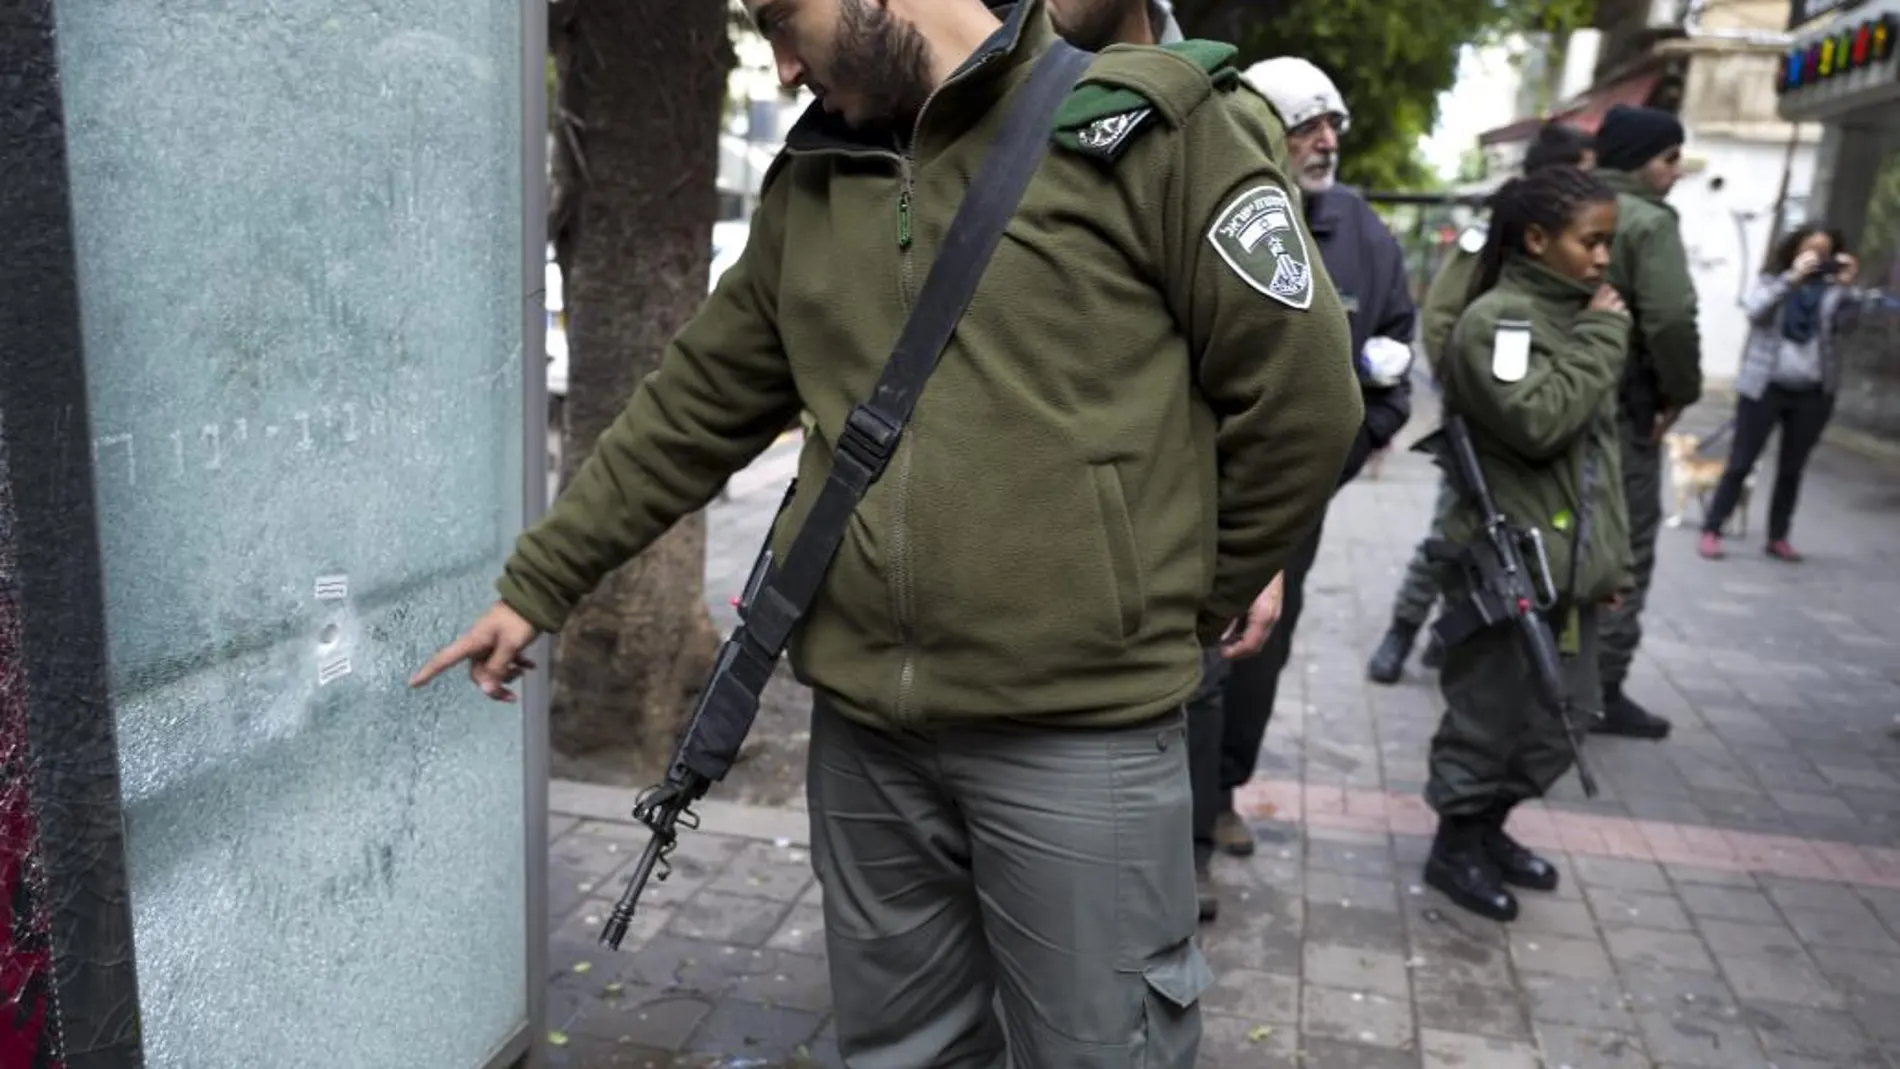 Efectivos policiales, fuerzas especiales de la unidad antiterrorista y miembros del servicio de inteligencia interior, el Shin Bet, participan en la operación.